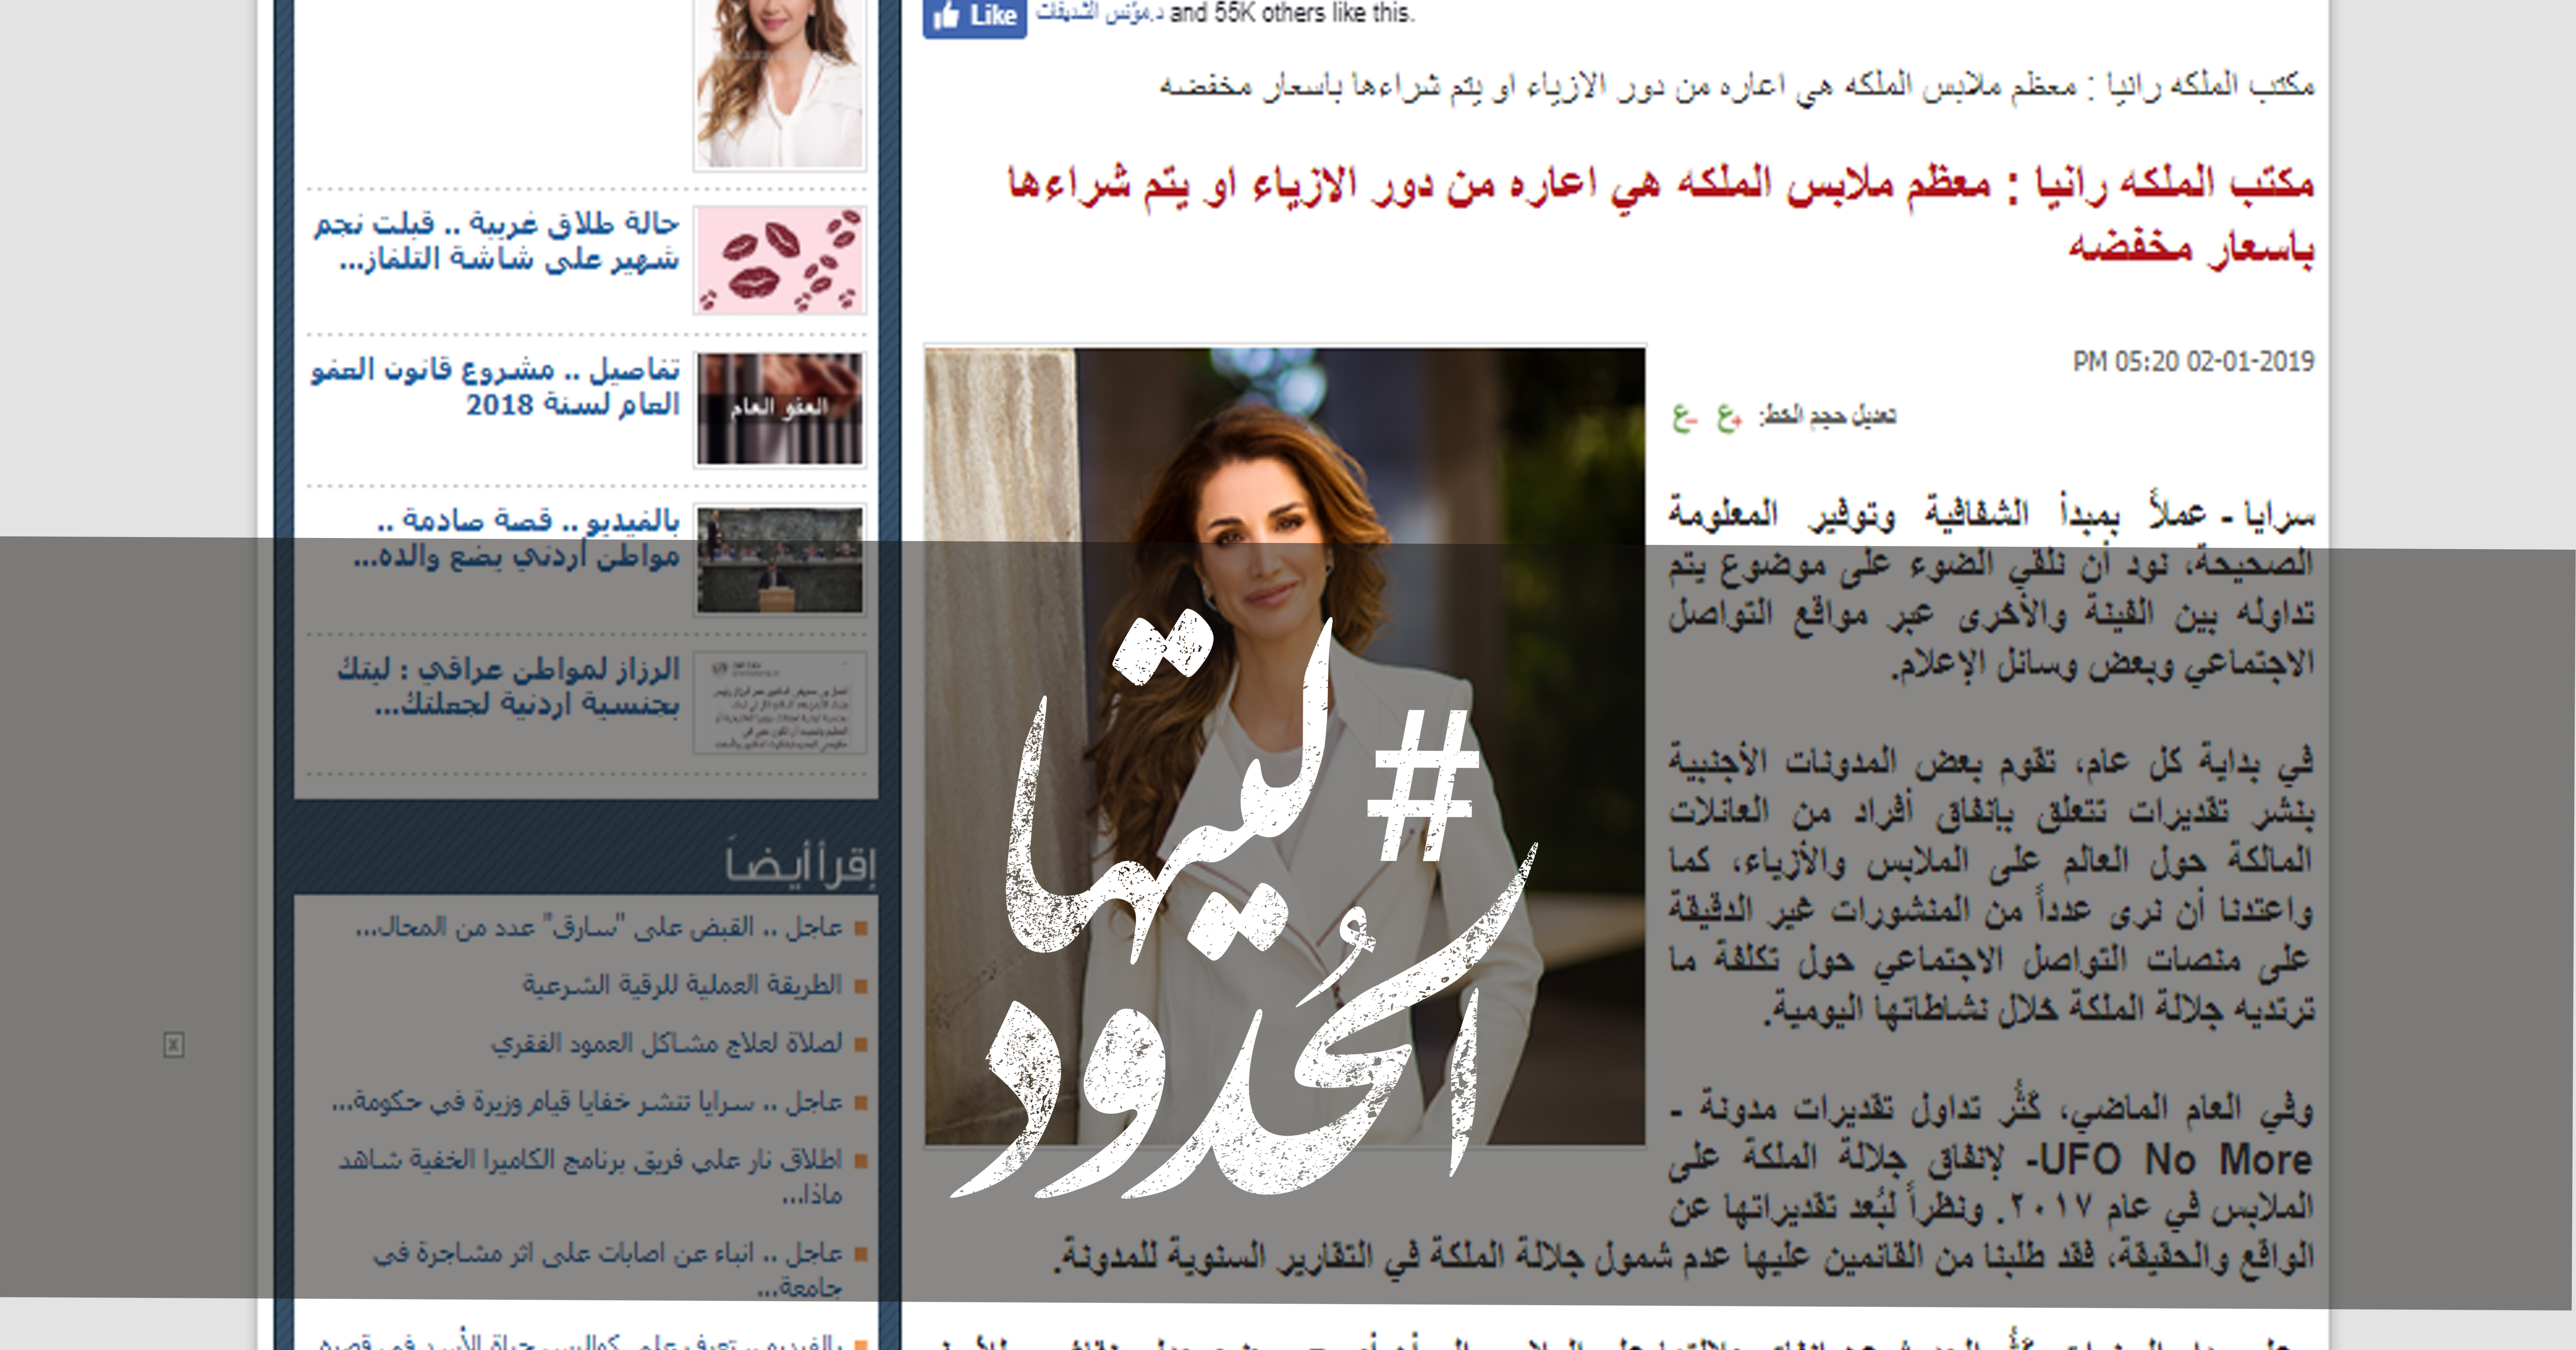 صورة مكتب الملكة رانيا: معظم ملابس الملكة هي اعارة من دور الازياء أو يتم شراءها بأسعار مخفضة